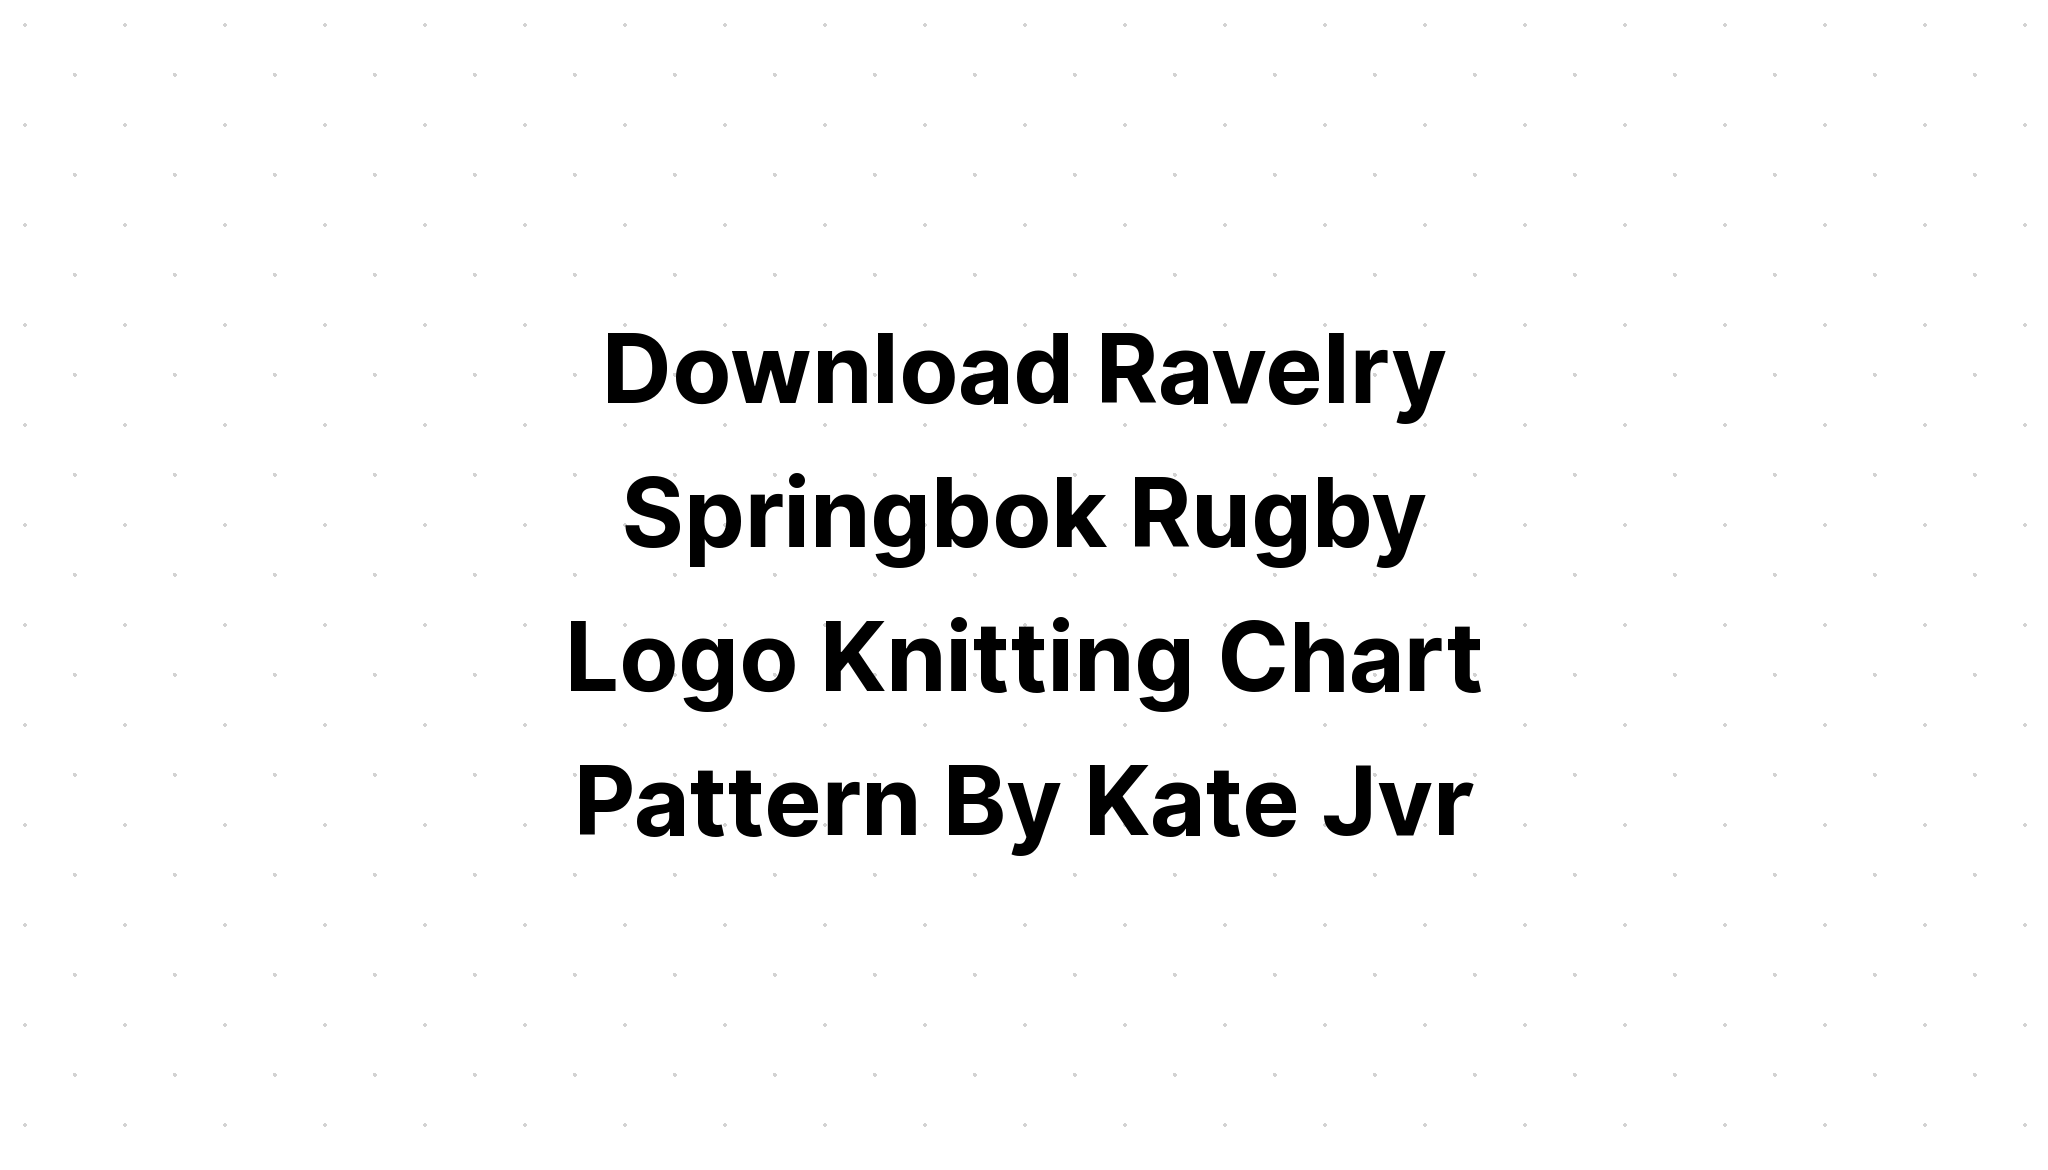 Download Springbok Rugby SVG File